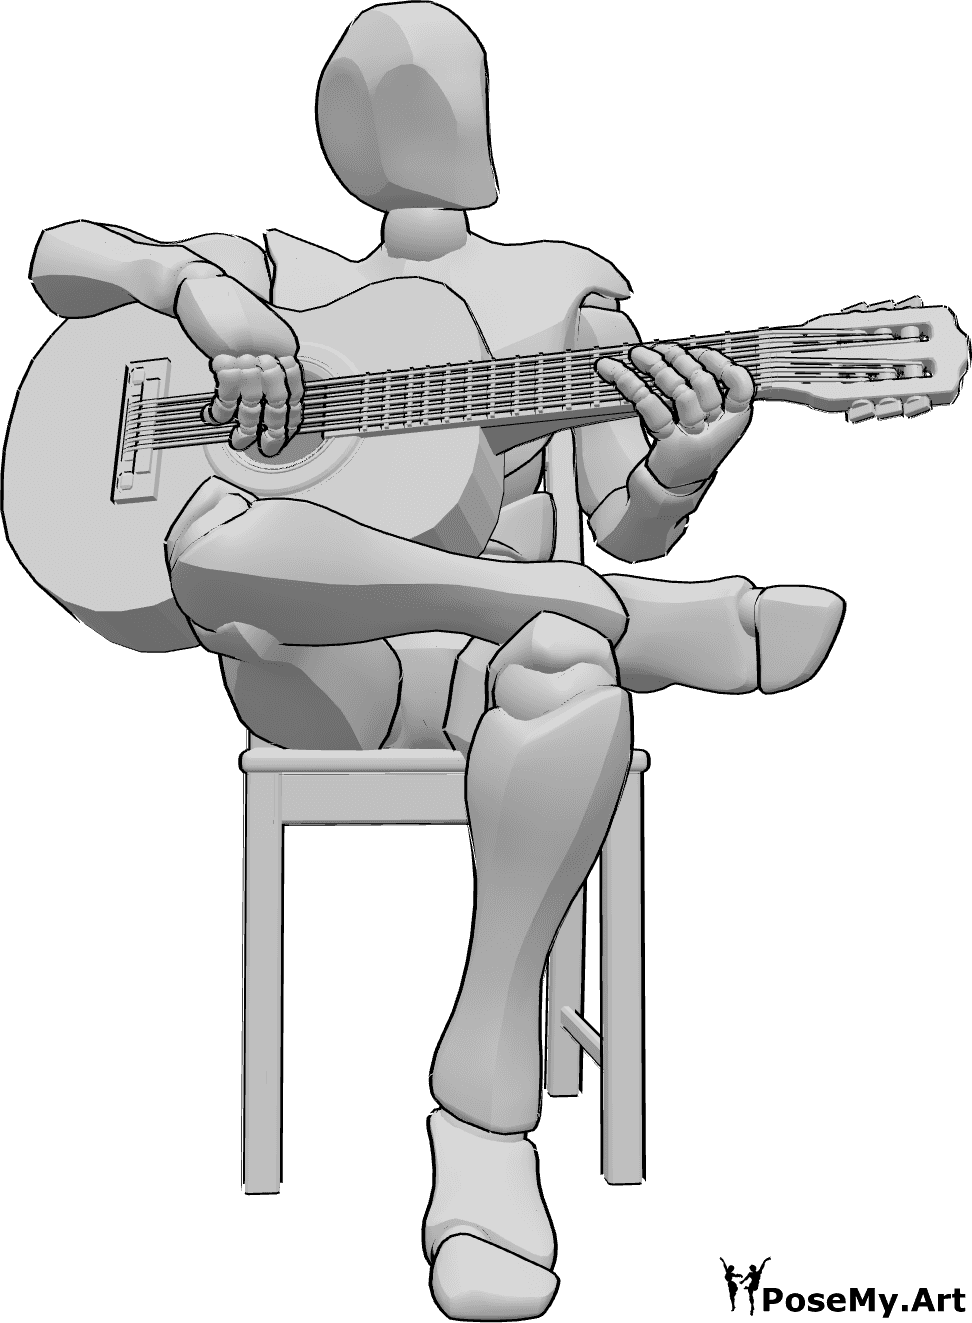 Referência de poses- Homem a tocar guitarra pose - Homem sentado numa cadeira com as pernas cruzadas e a tocar guitarra, olhando para a esquerda